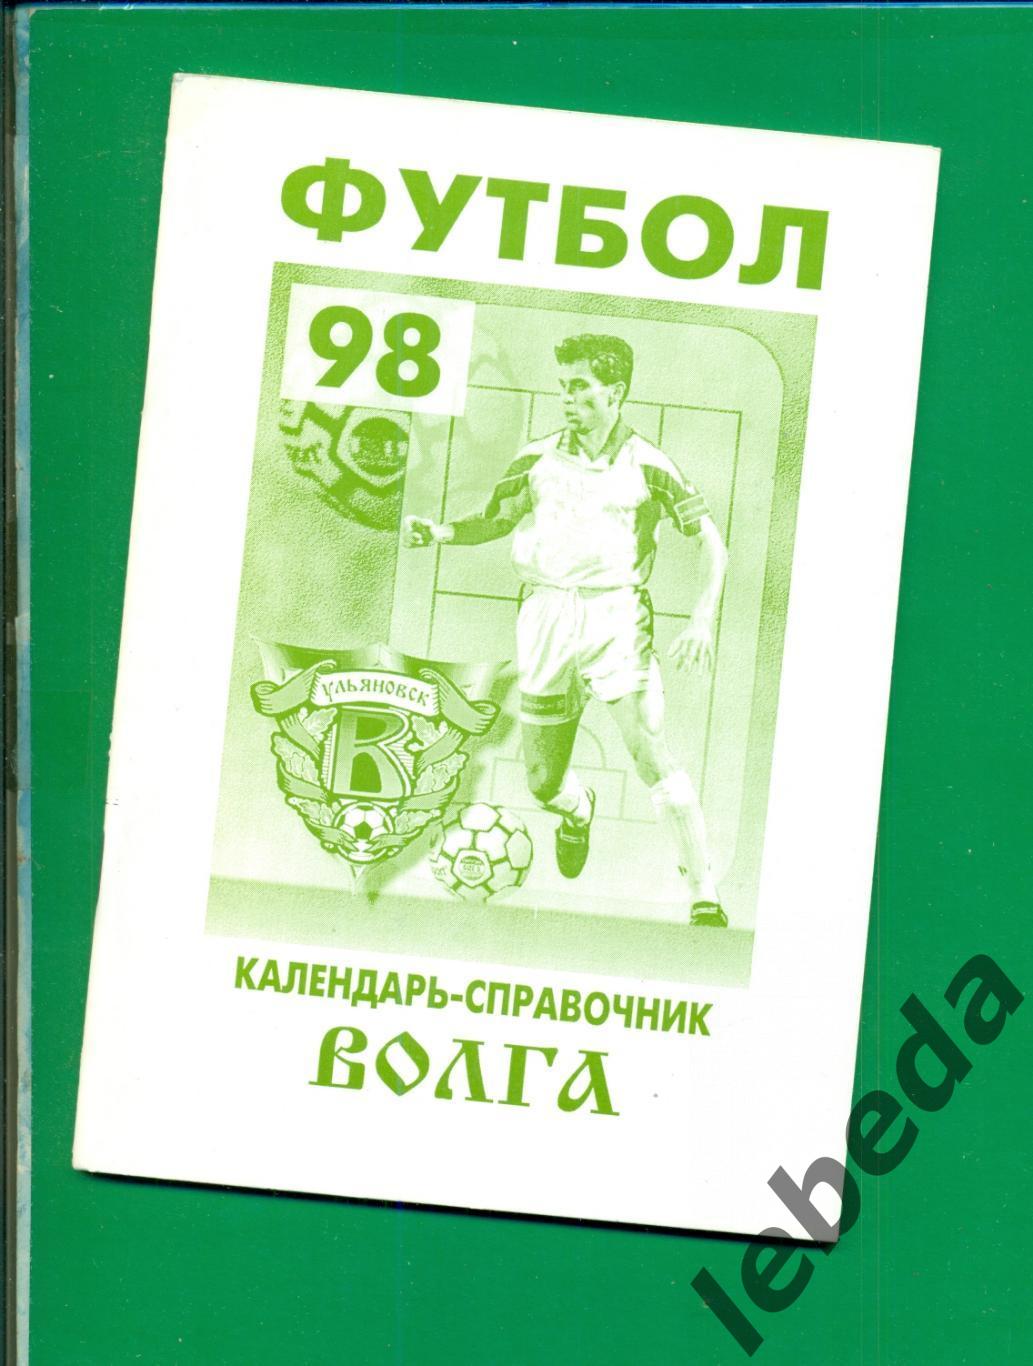 Волга Ульяновск - 1998 год. Официальное издание клуба.